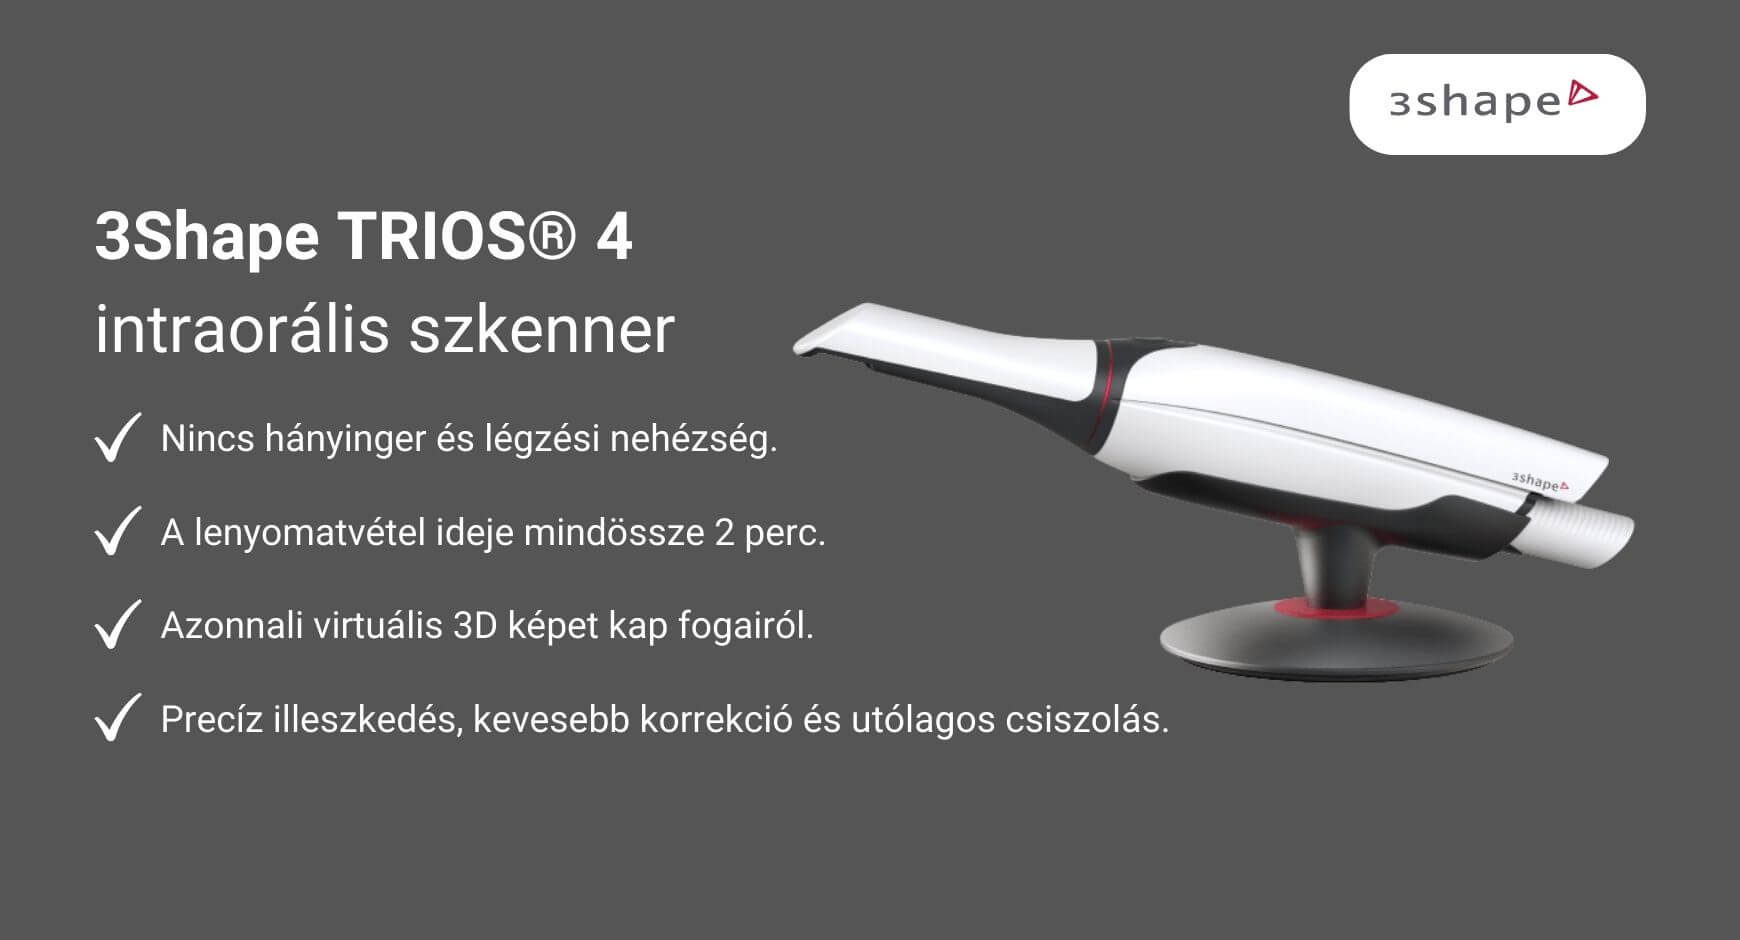 3Shape TRIOS® 4 intraorális szkenner előnyeit bemutató ábra.